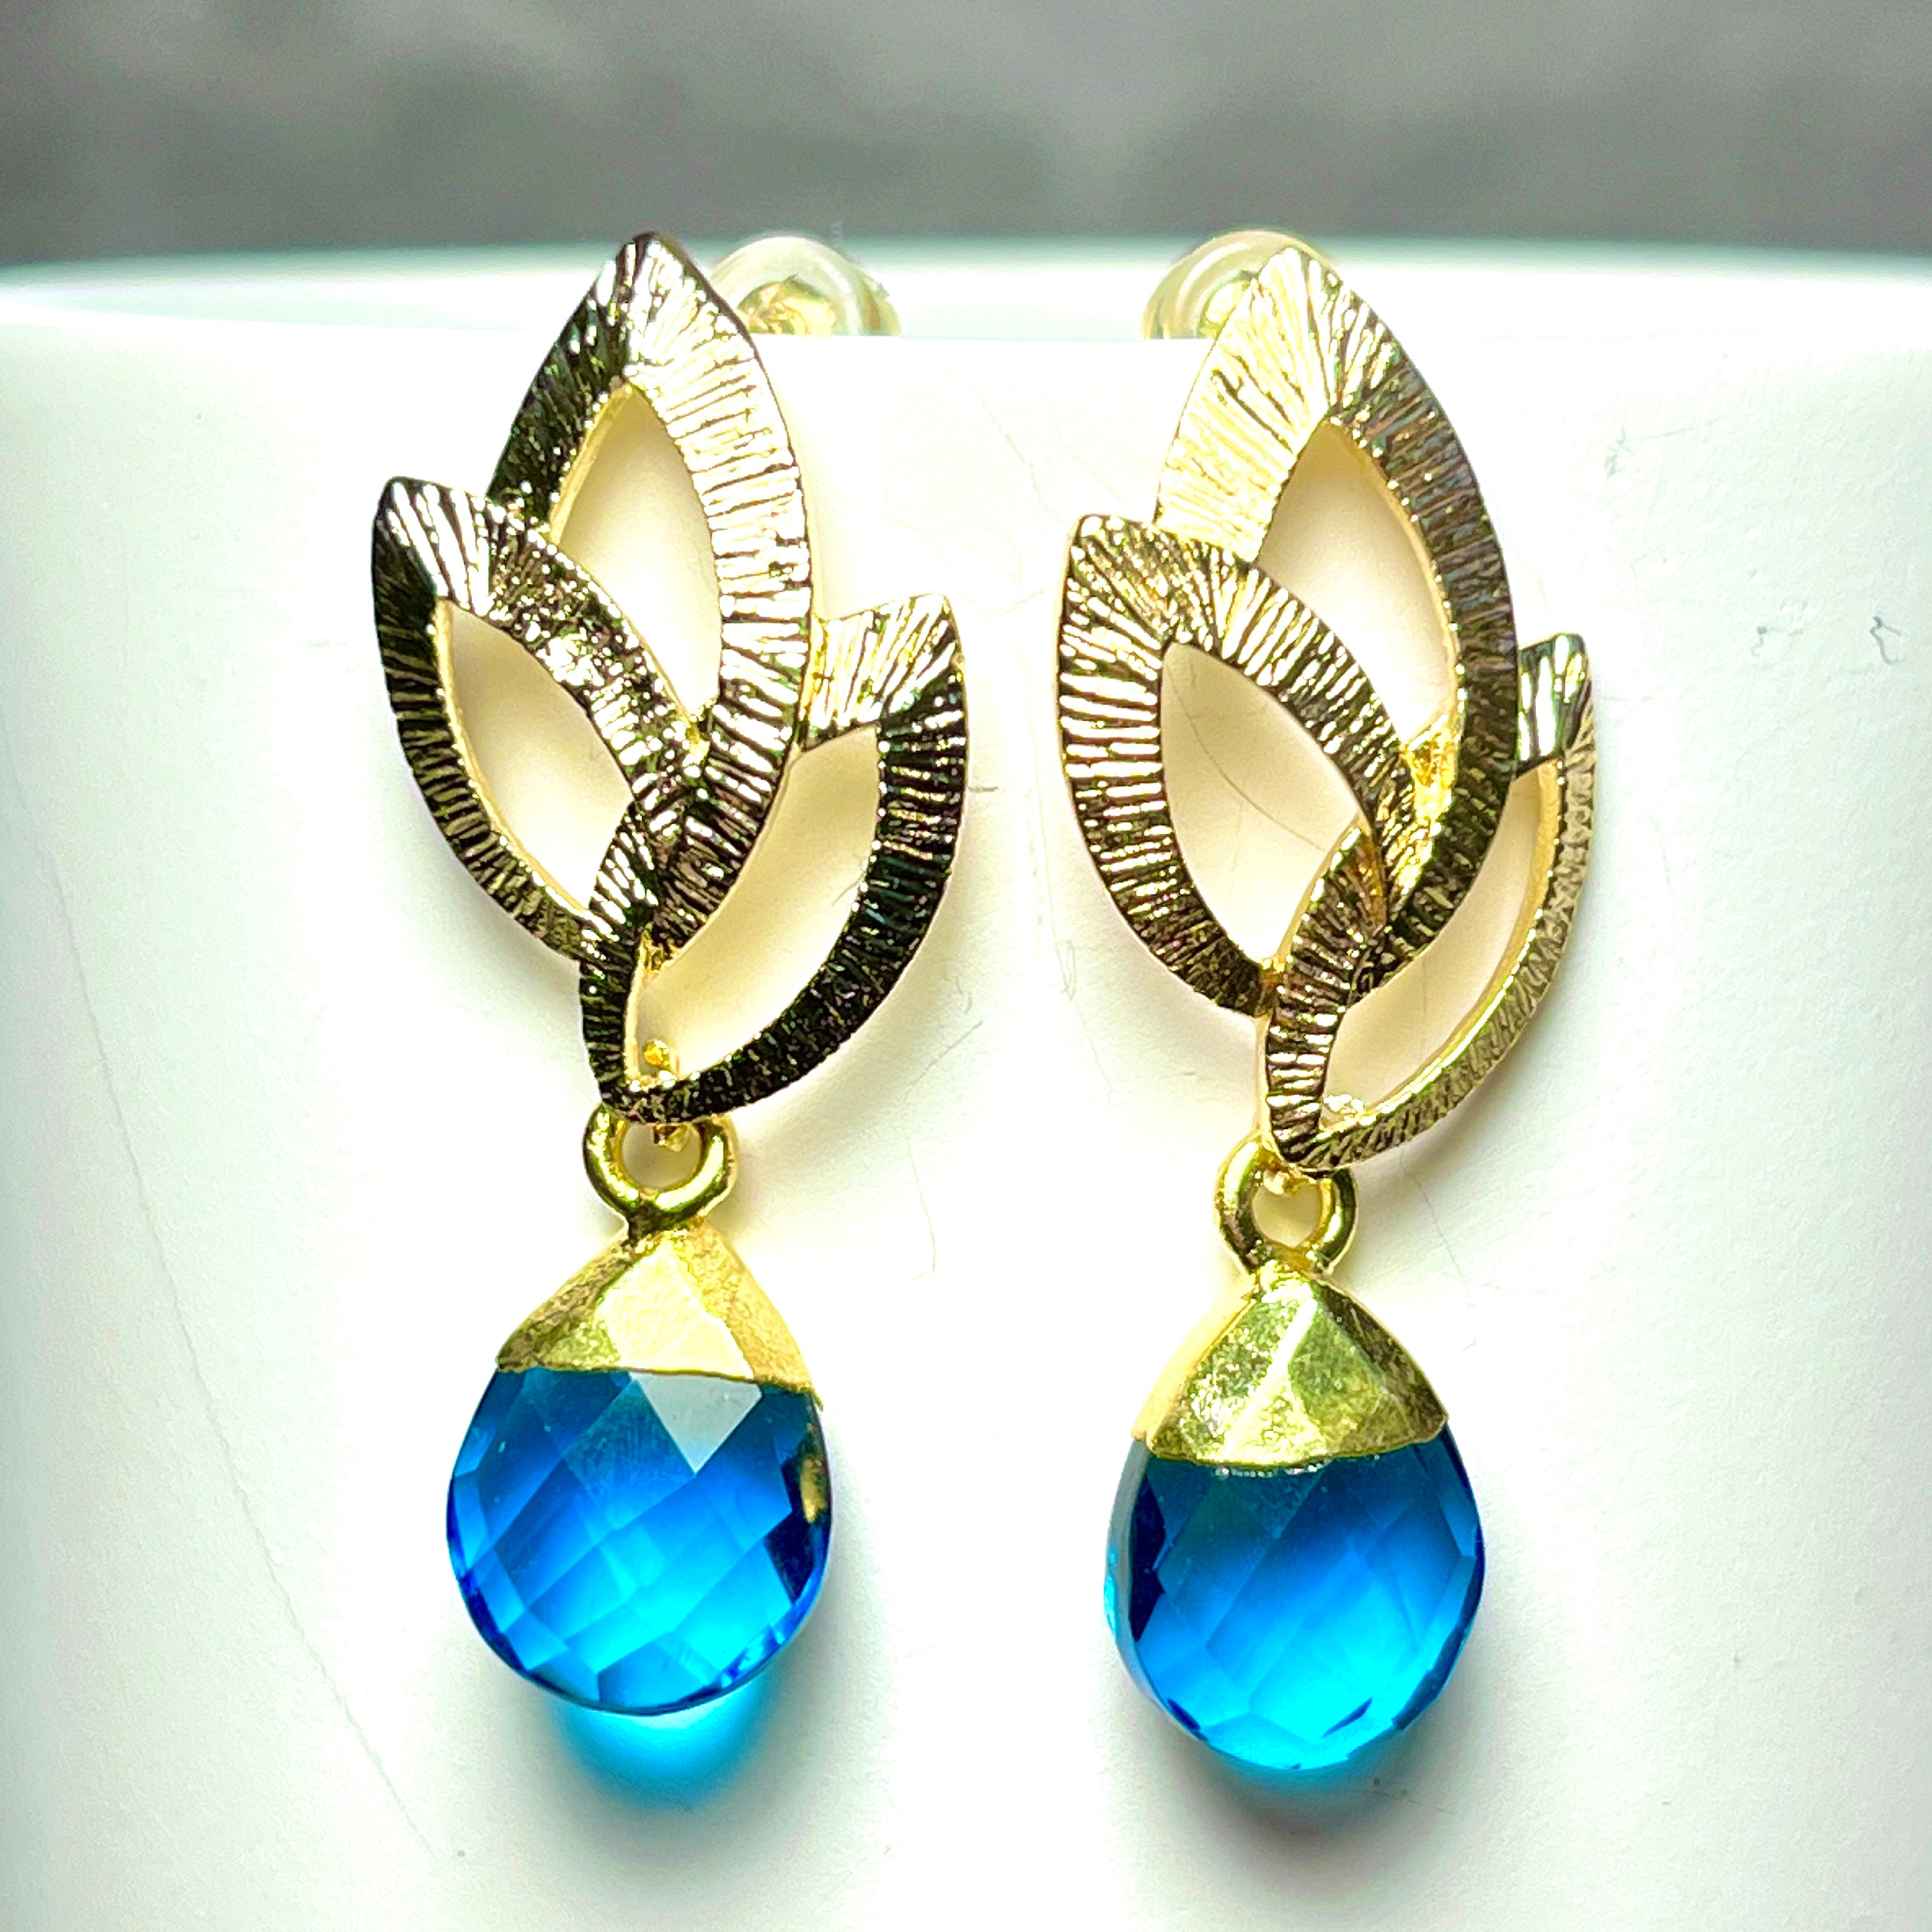 Boucles d’oreilles "NASHVILLE" dorées or fin Quartz bleu